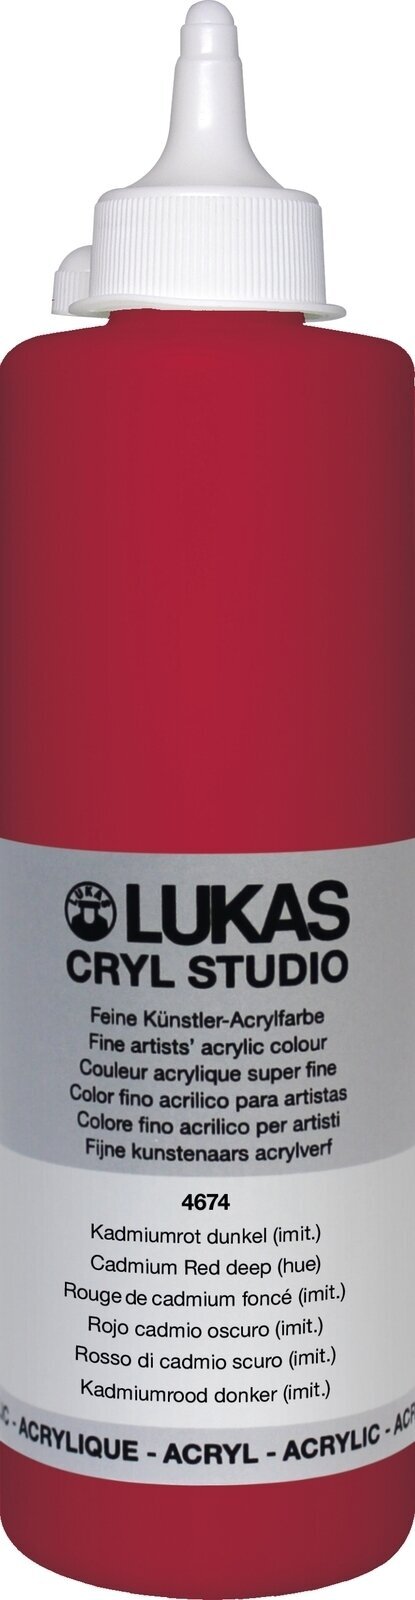 Peinture acrylique Lukas Cryl Studio Acrylic Paint Plastic Bottle Peinture acrylique Cadmium Red Deep Hue 500 ml 1 pc